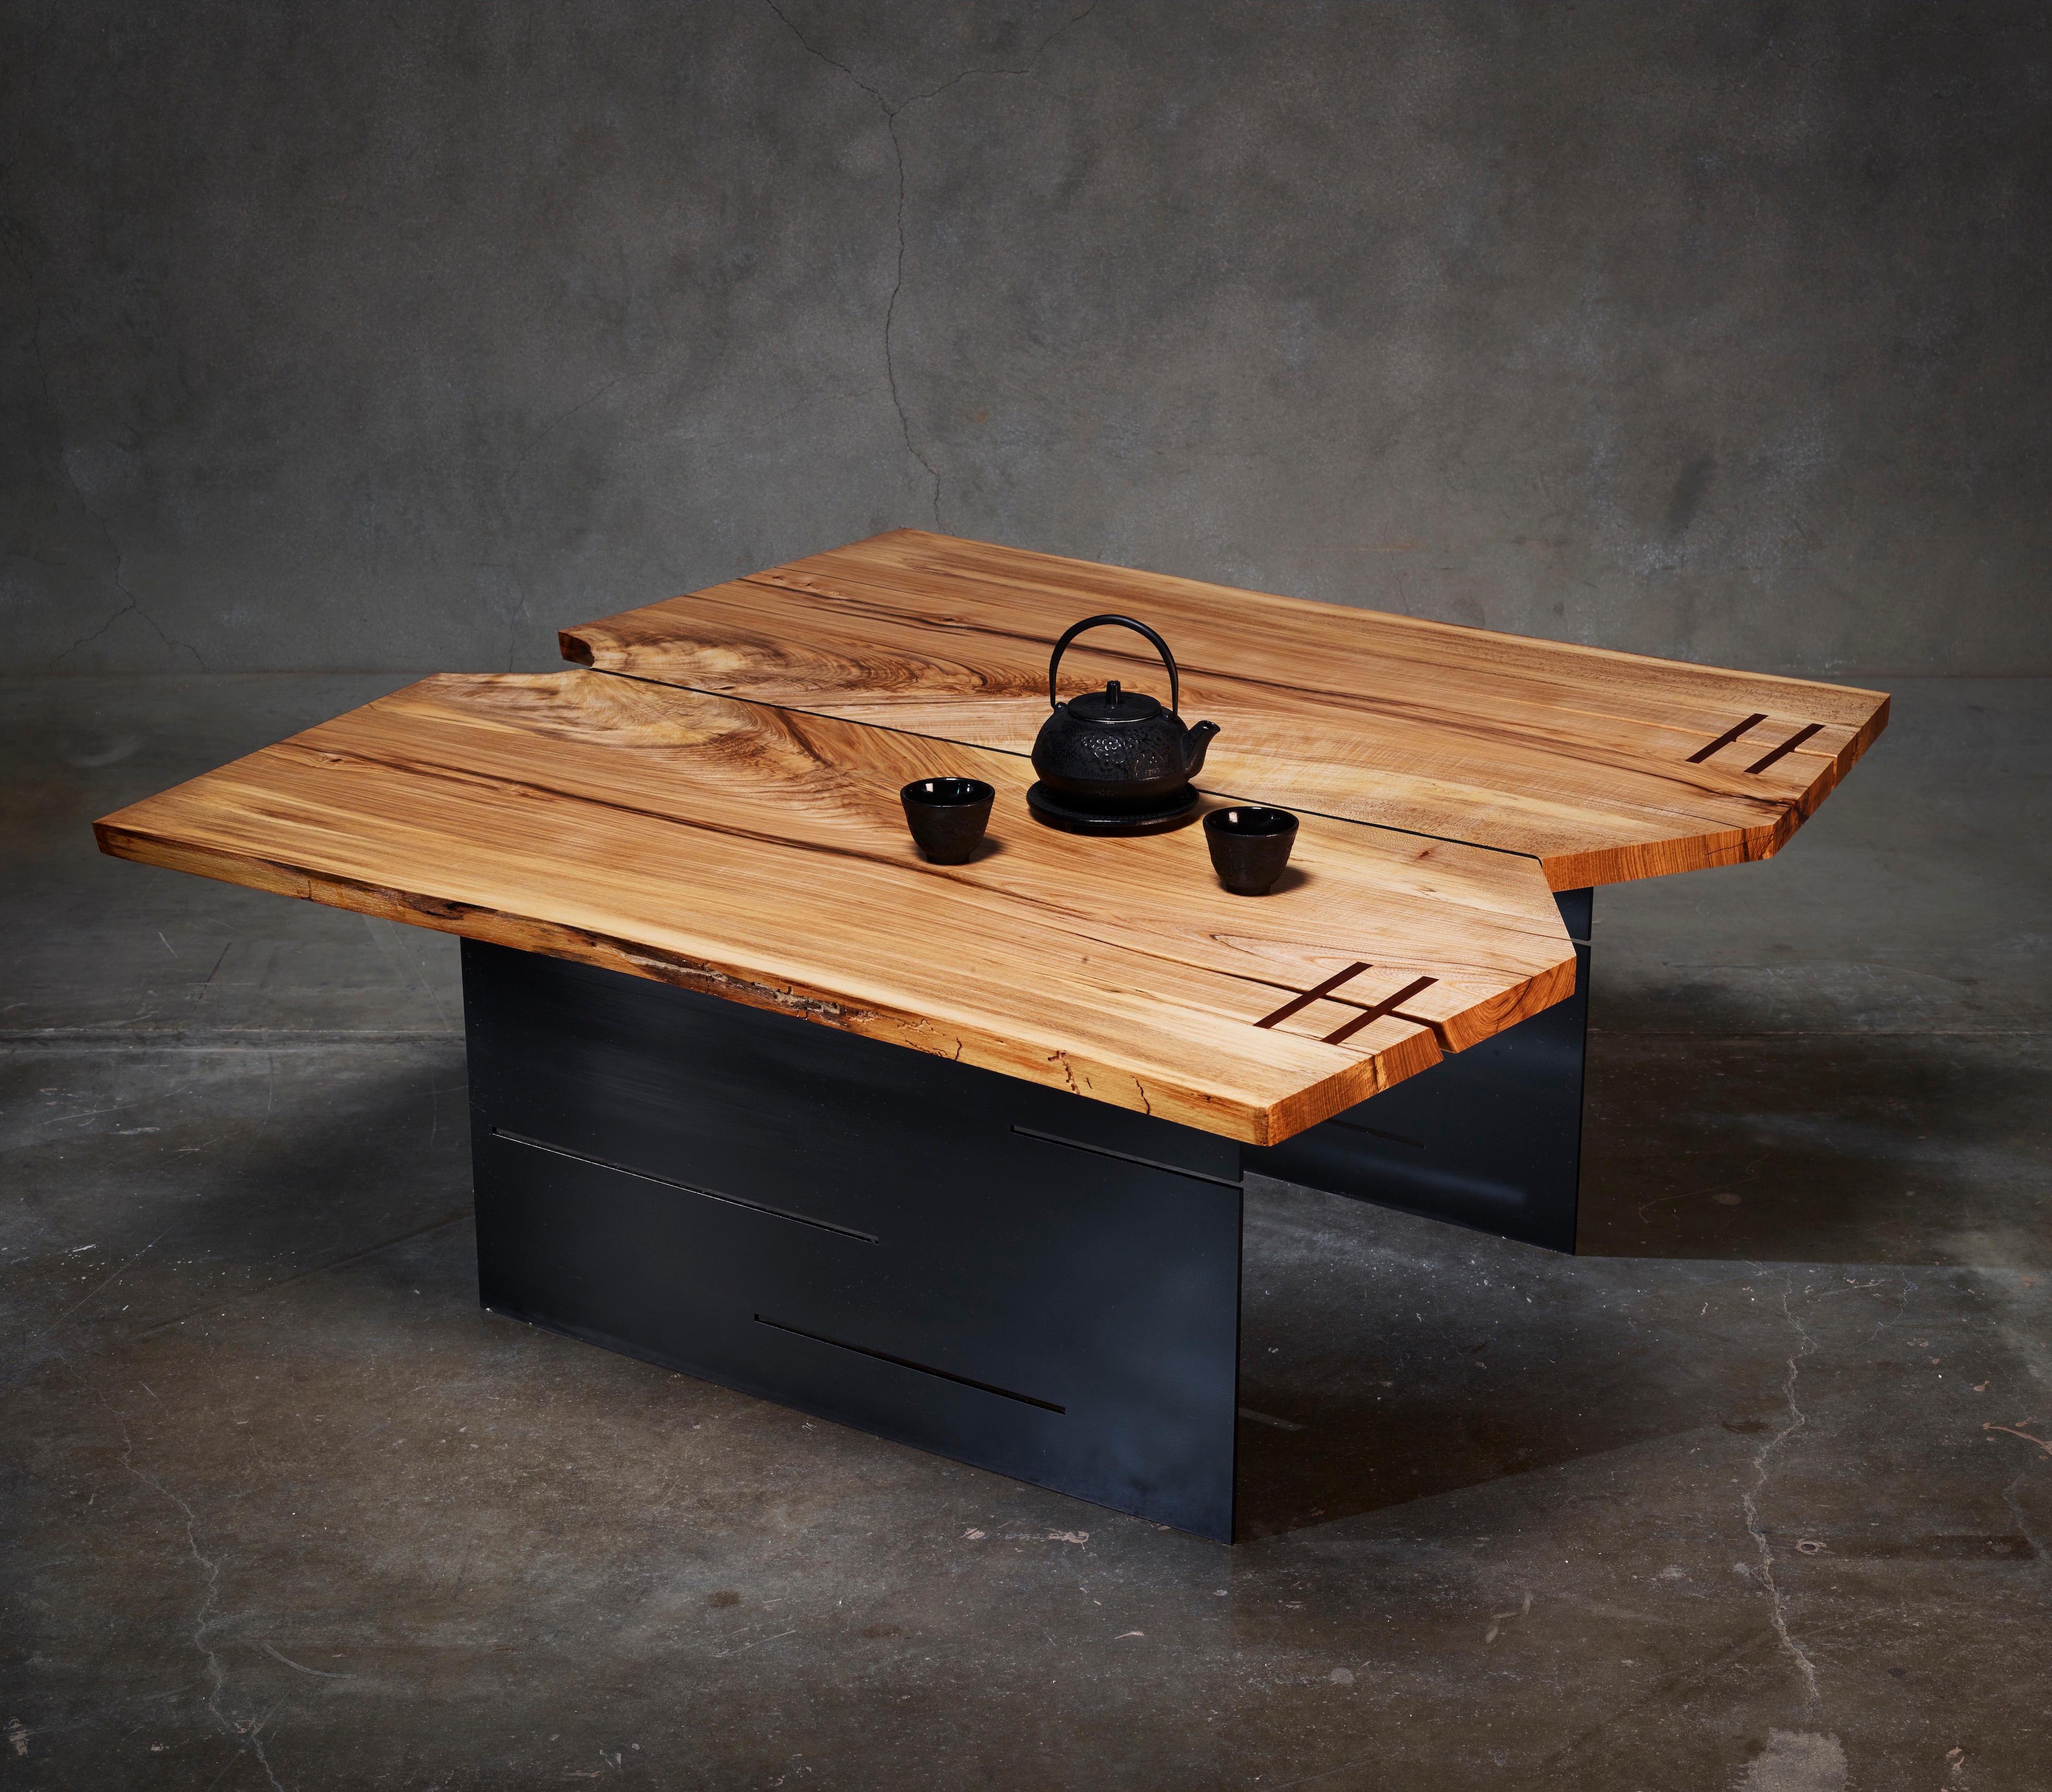 La table Butterfly est conçue, dessinée et créée par l'artiste et architecte primé Michael Olshefski de Primal Modern. Inspirée des cérémonies du thé japonaises, la table Butterfly peut servir de table à cocktail, à café, de table de cérémonie du